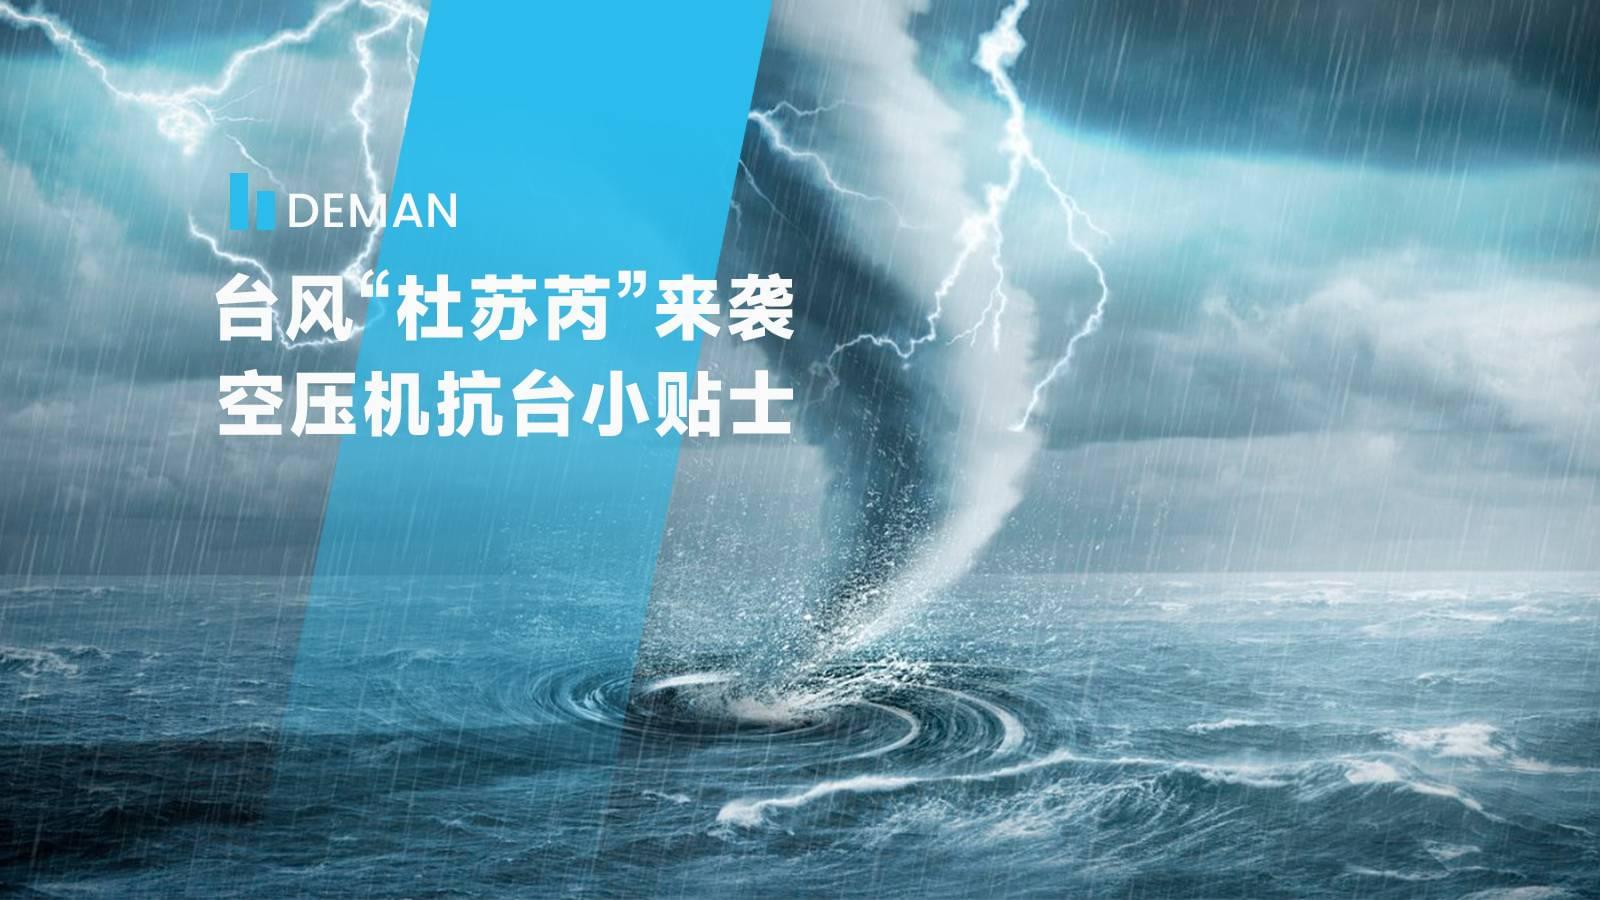 台风“杜苏芮”来袭,华体会全站
为您提供空压机抗台小贴士